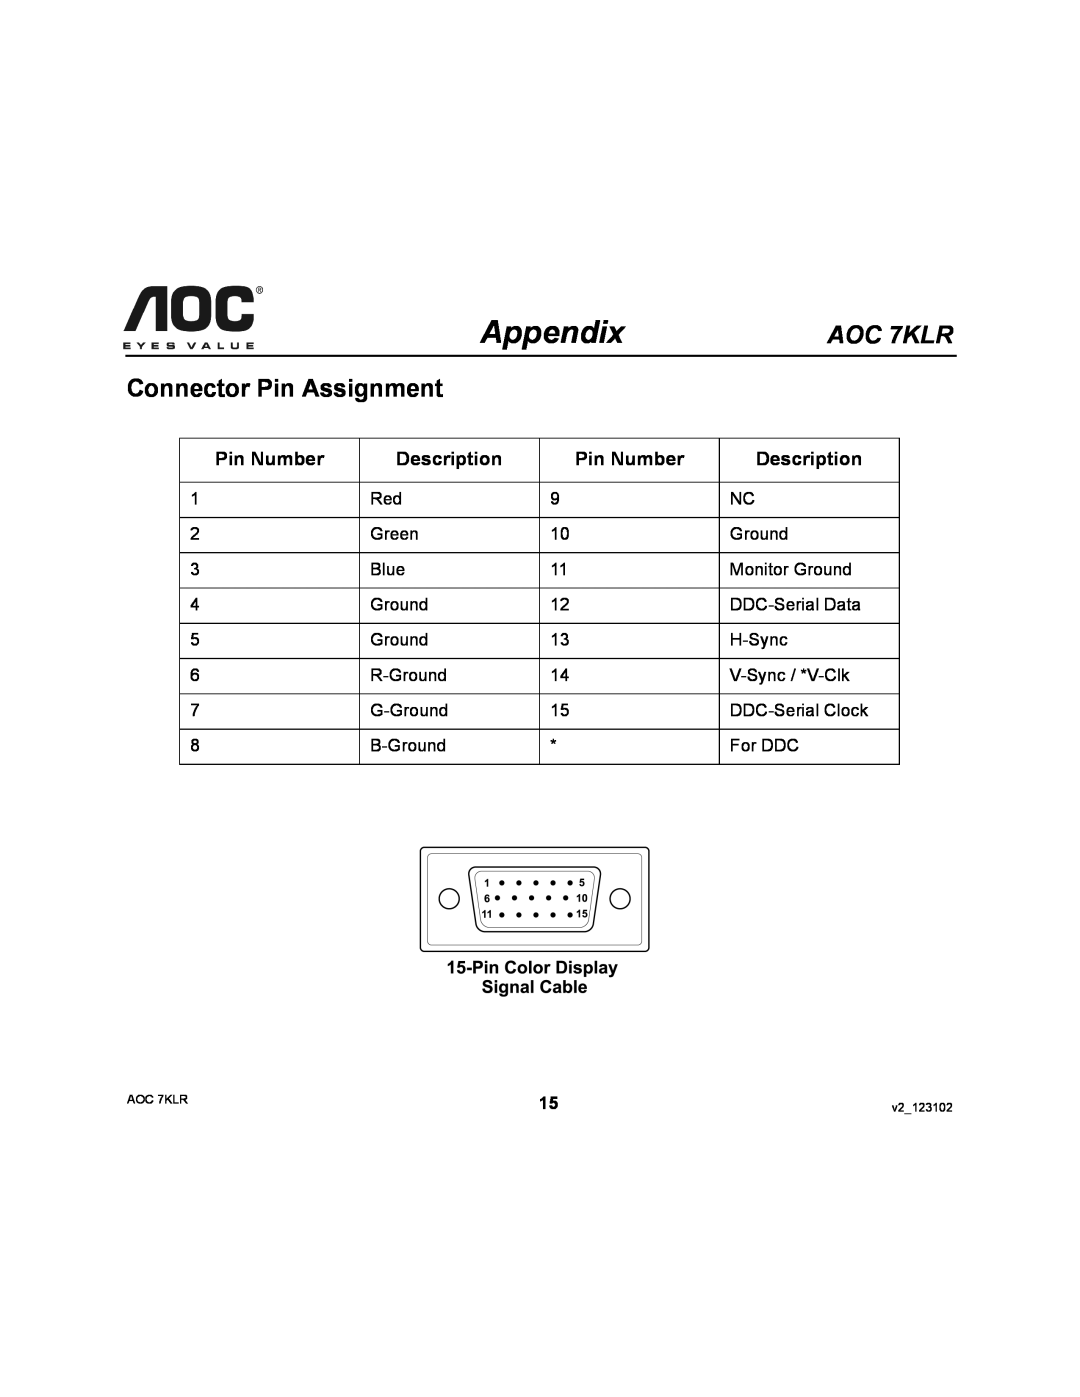 AOC user manual Connector Pin Assignment, Pin Number, Description, Appendix, AOC 7KLR 